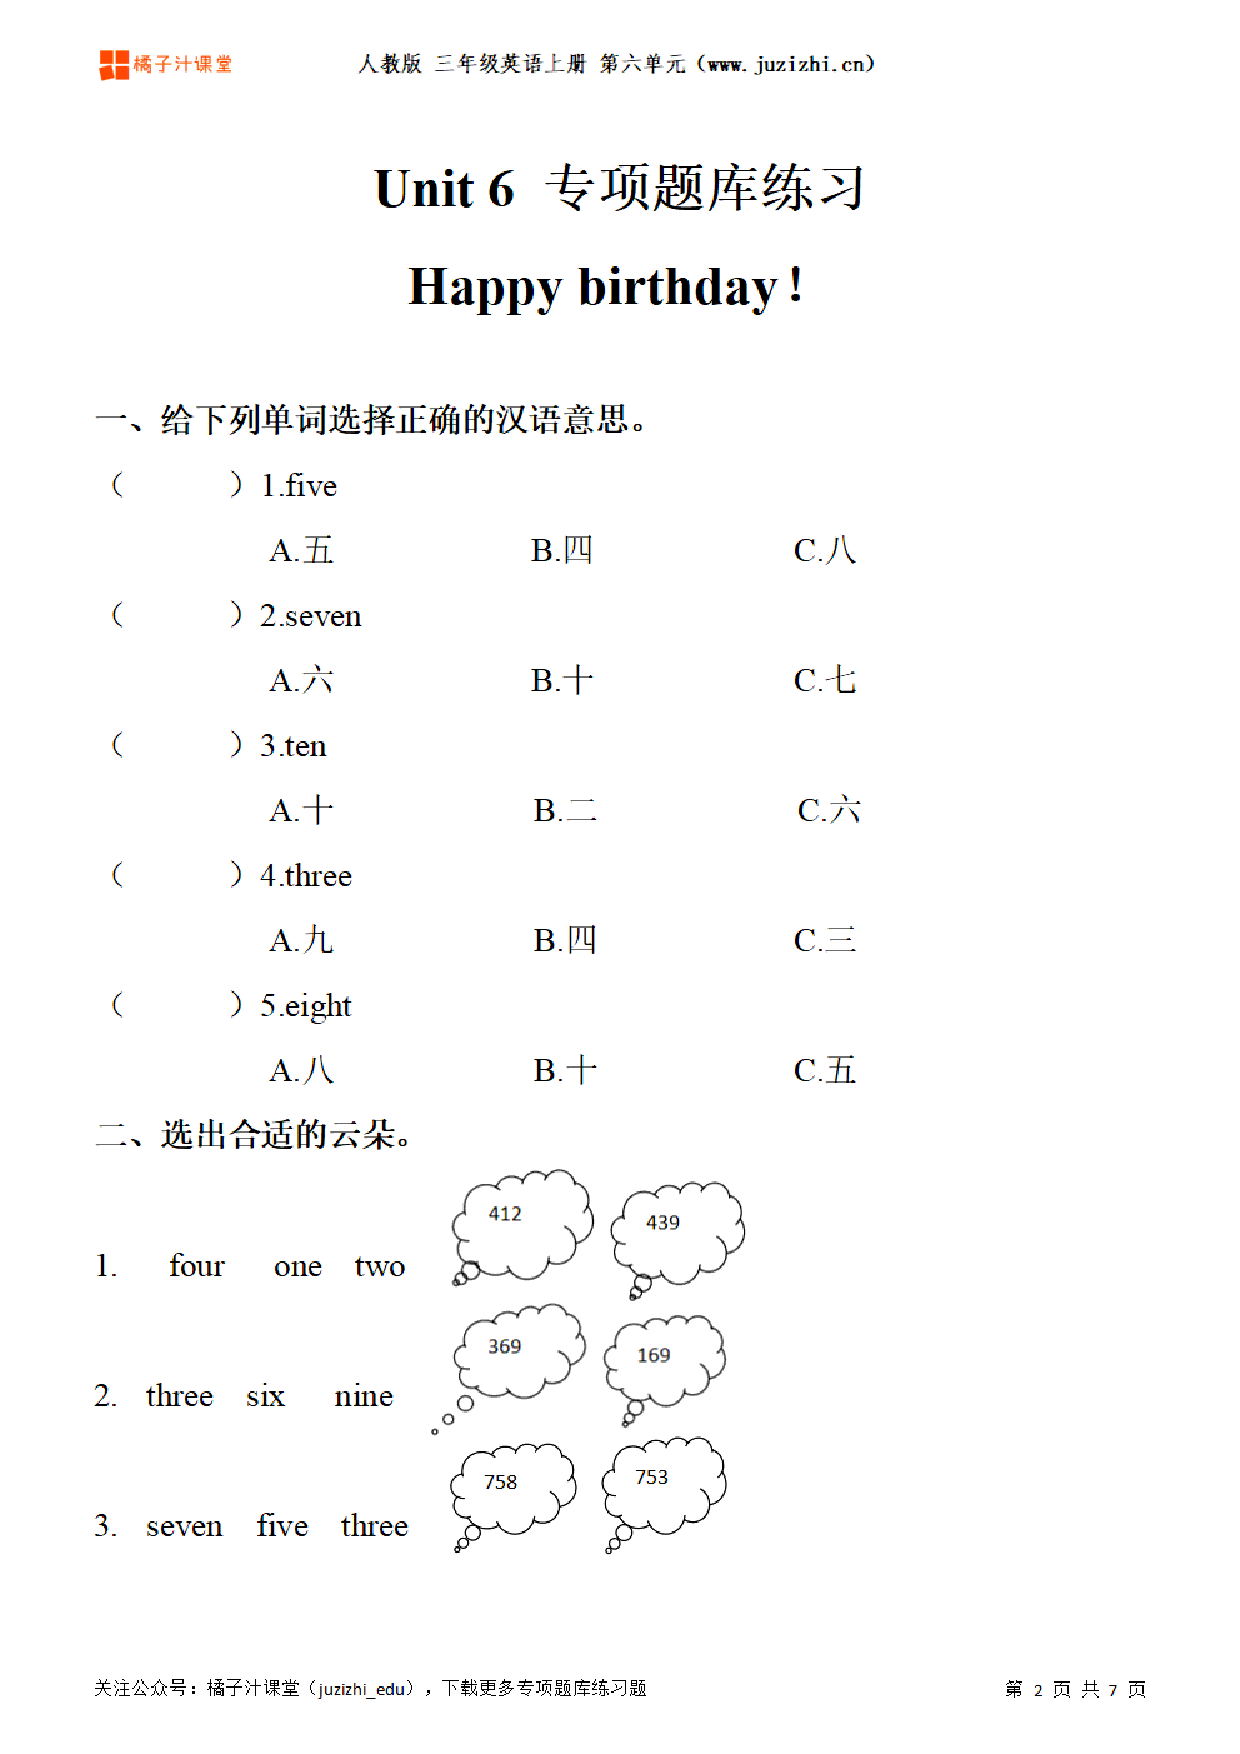 【PEP英语】三年级上册Unit 6《Happy birthday!》专项题库练习